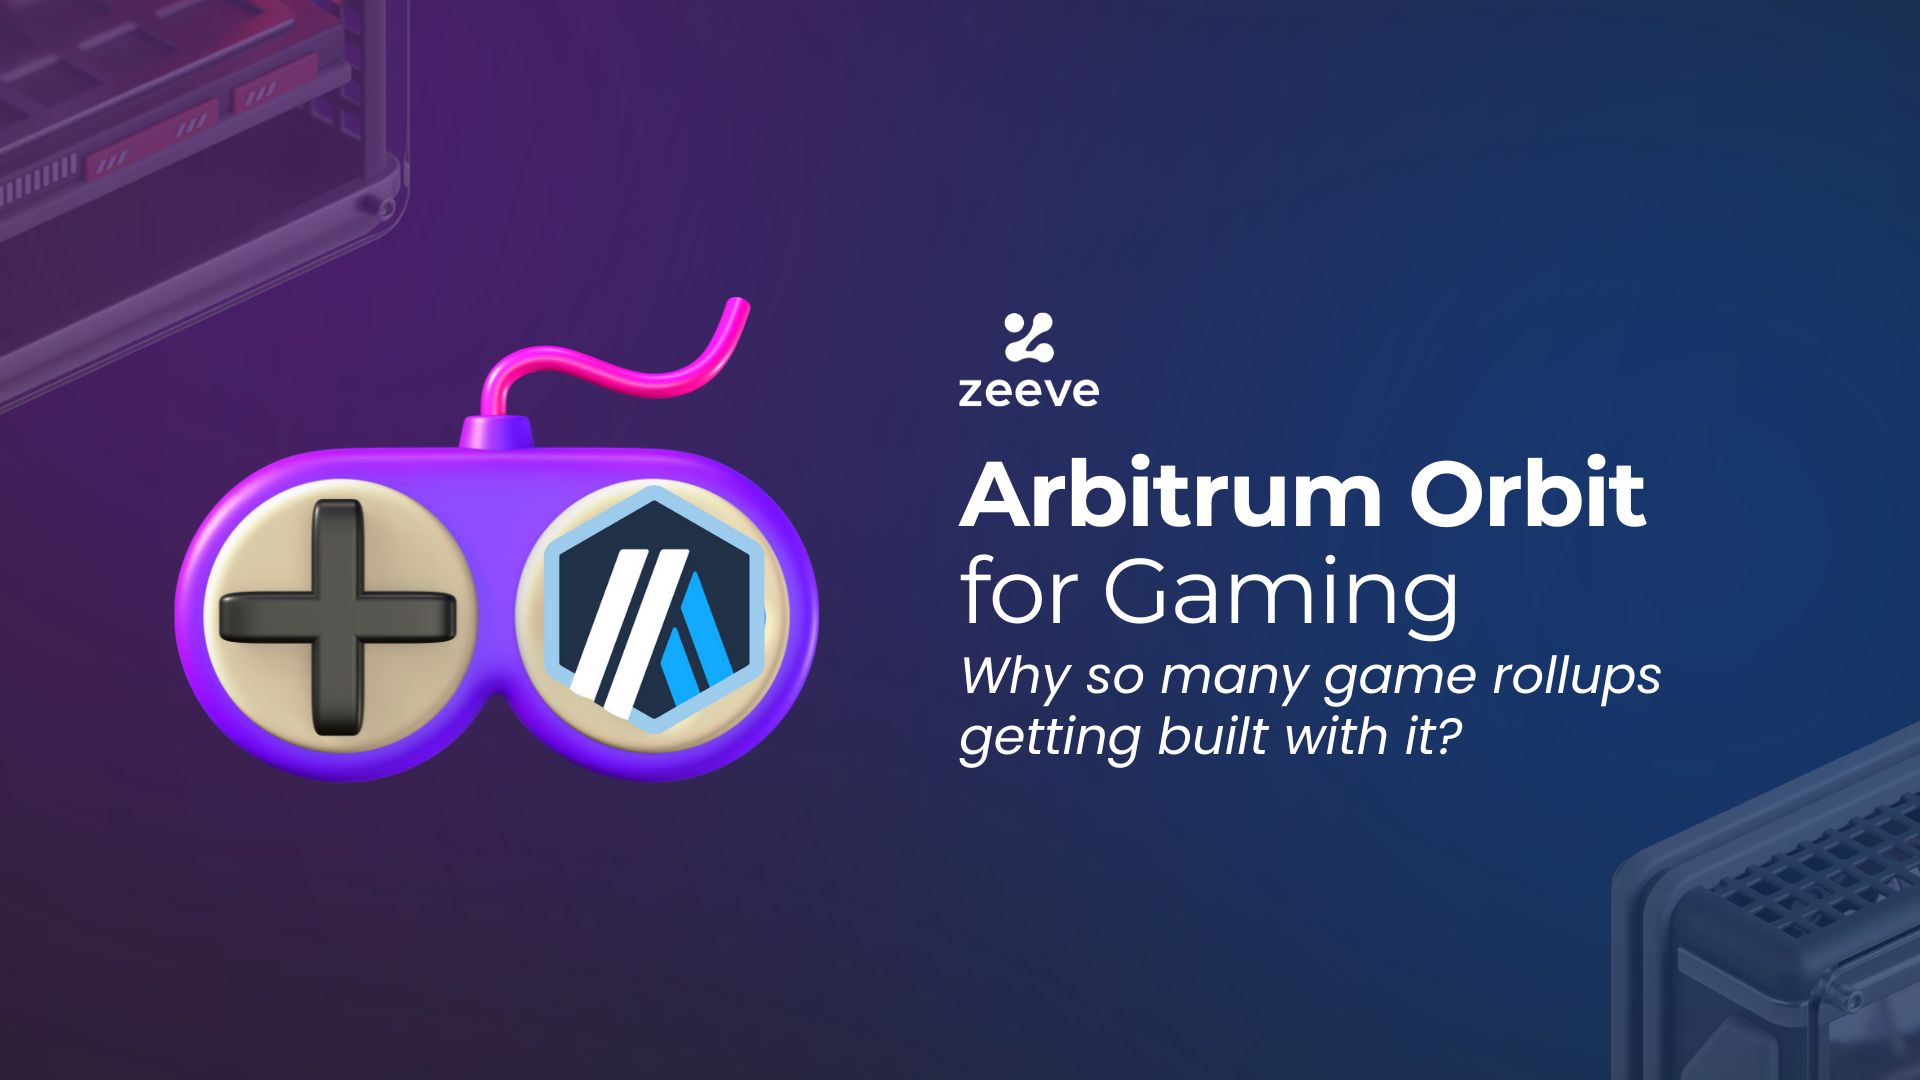 Arbitrum Orbit for gaming